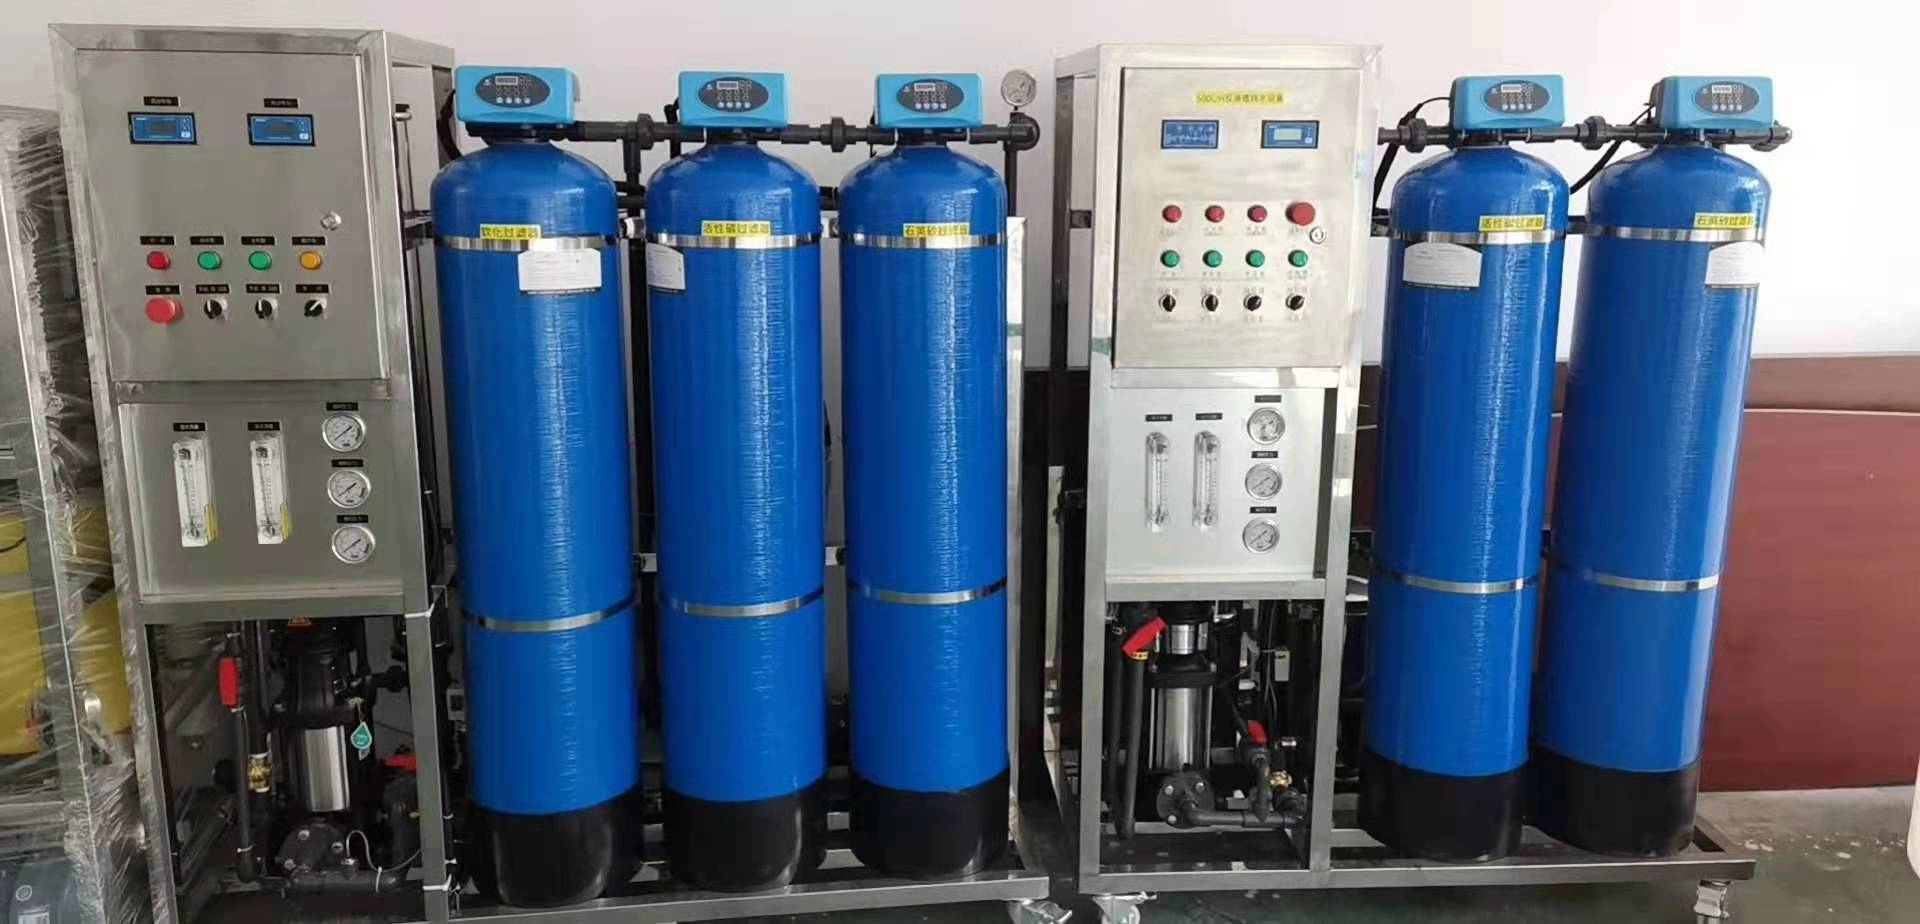 Novo equipamento de tratamento de água de osmose reversa atualizado para purificação industrial de 99,8% para beber sistema RO